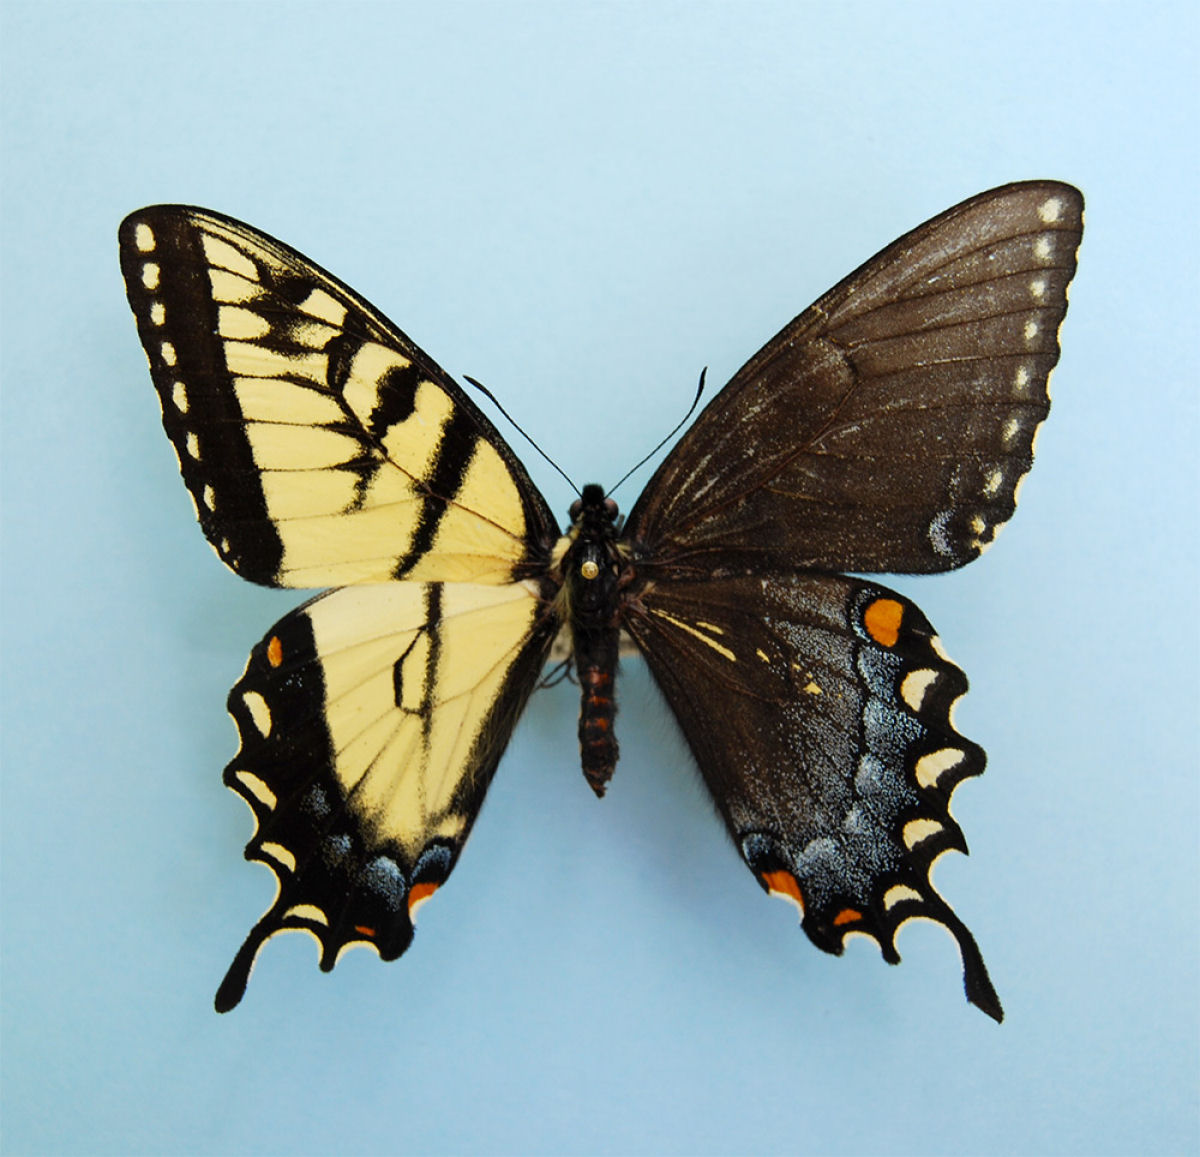 Anomalia gentica cria borboletas com belas asas de cores diferentes 02